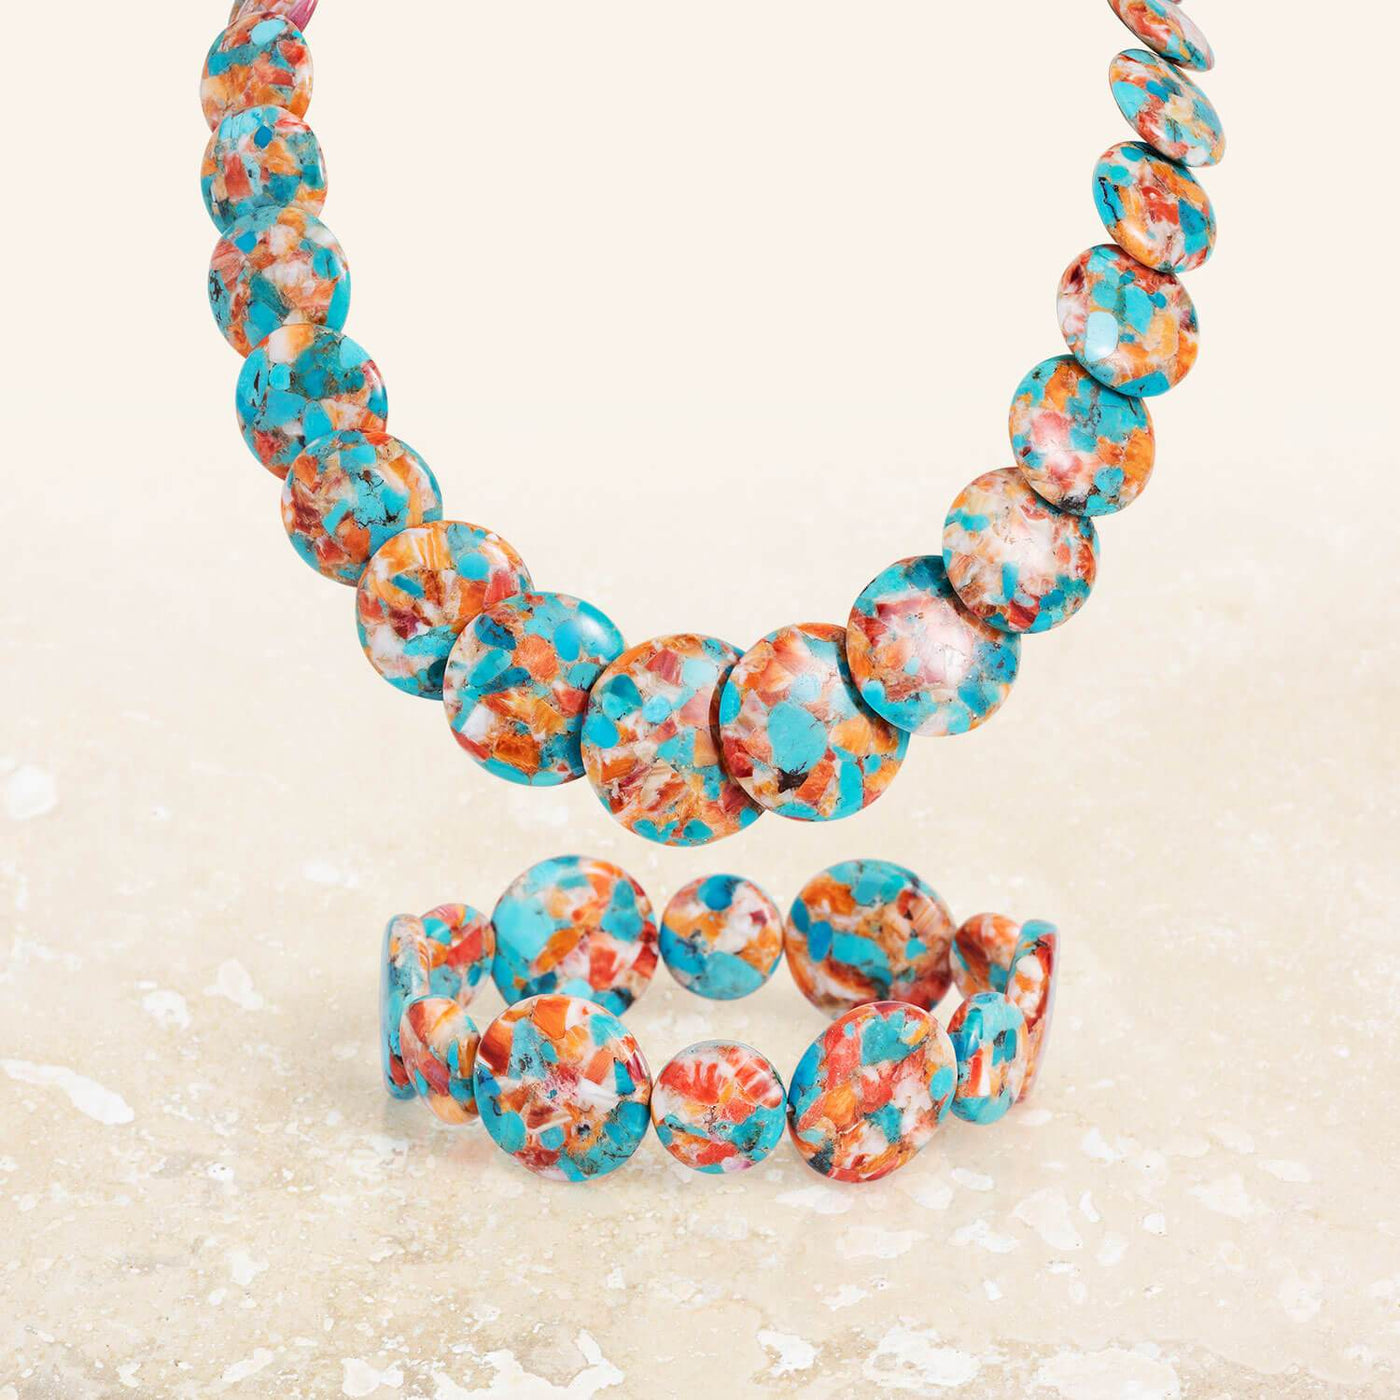 Daniel Steiger Ocean Splash Turquoise & Shell Bracelet